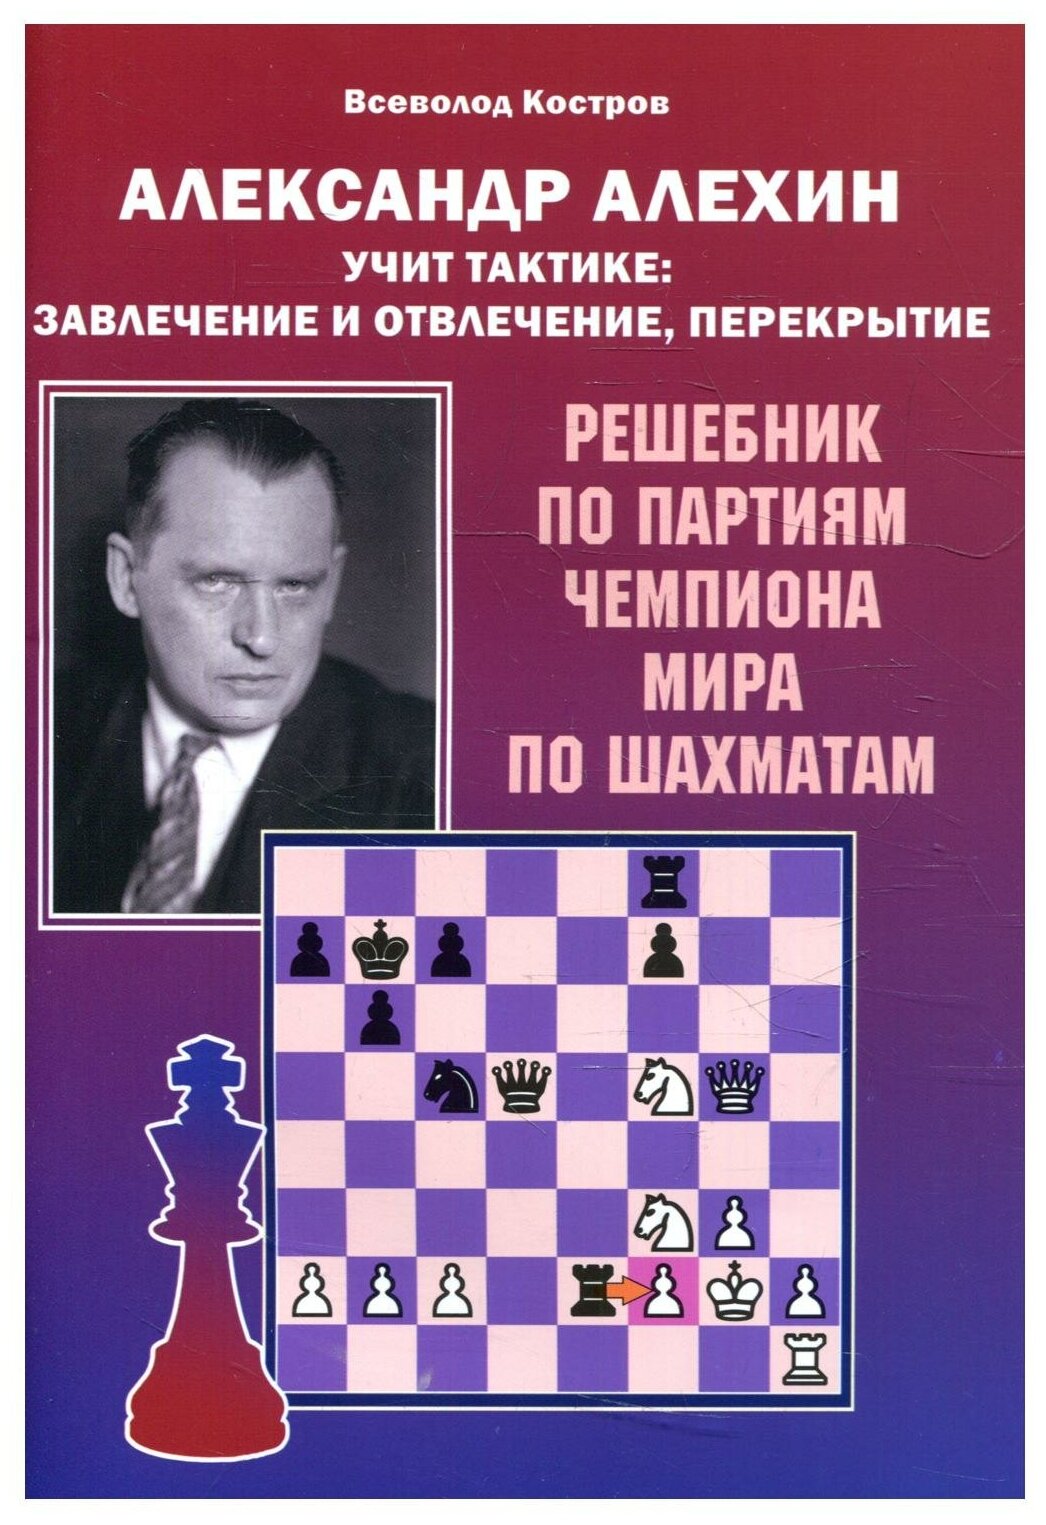 Александр Алехин учит тактике завлечение и отвлечение перекрытие Решебник по партиям чемпиона мира по шахматам - фото №1